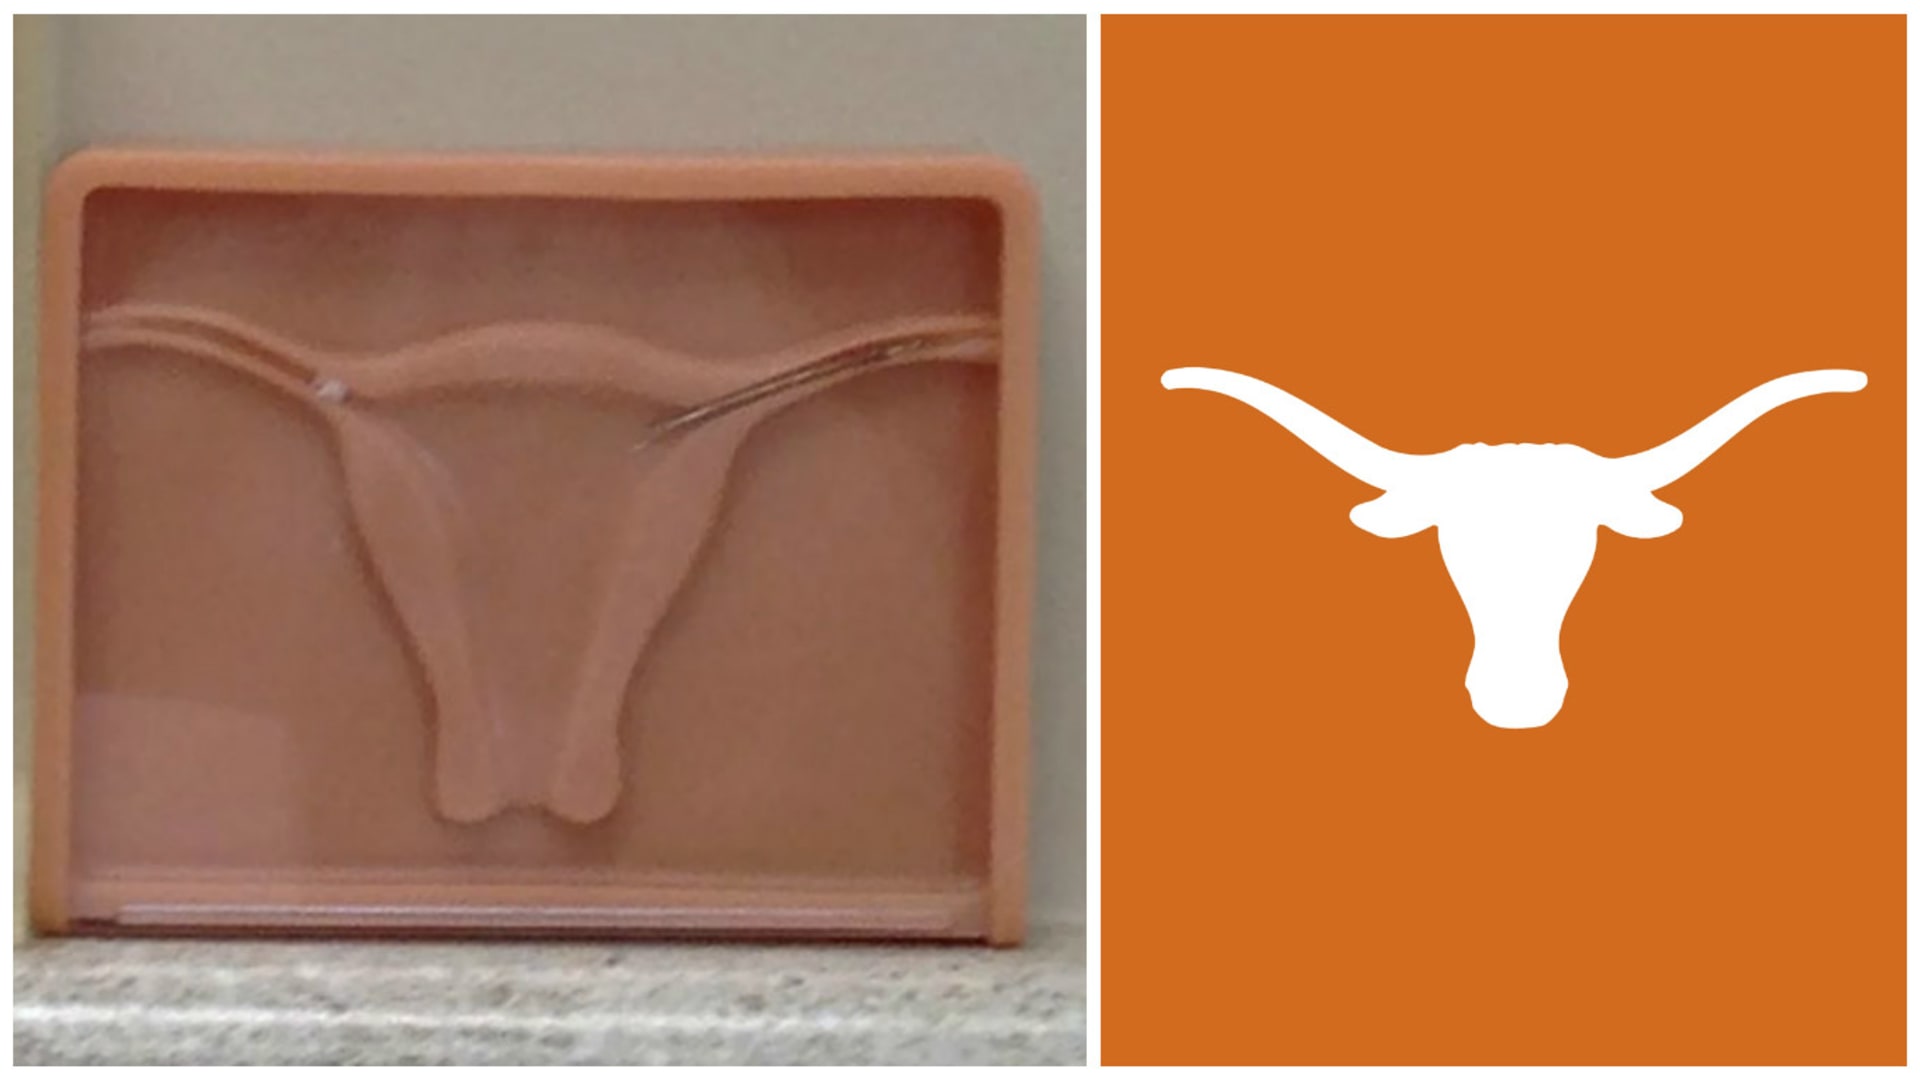 Manžel se zeptal jejího gynekologa, proč má v čekárně ten znak Texas Longhorns, jestli je taky fanoušek